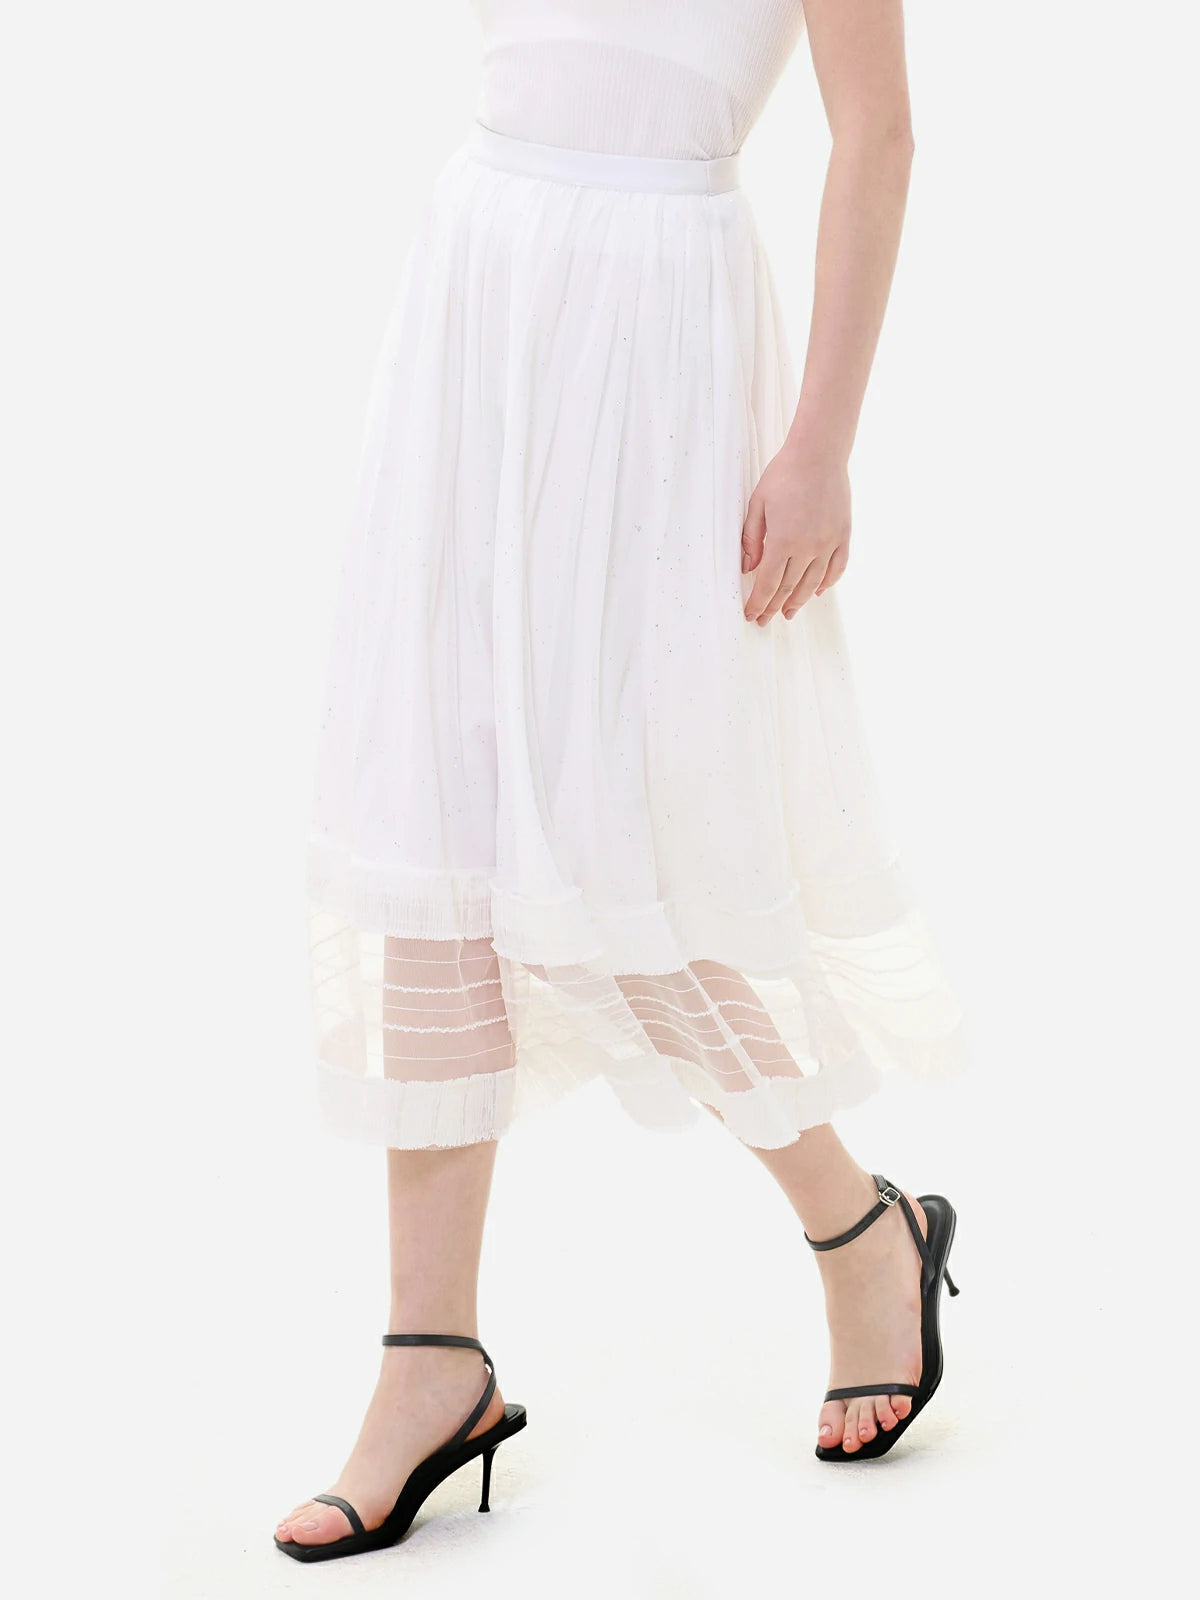 Feminine elegance and curves in a white skirt hem